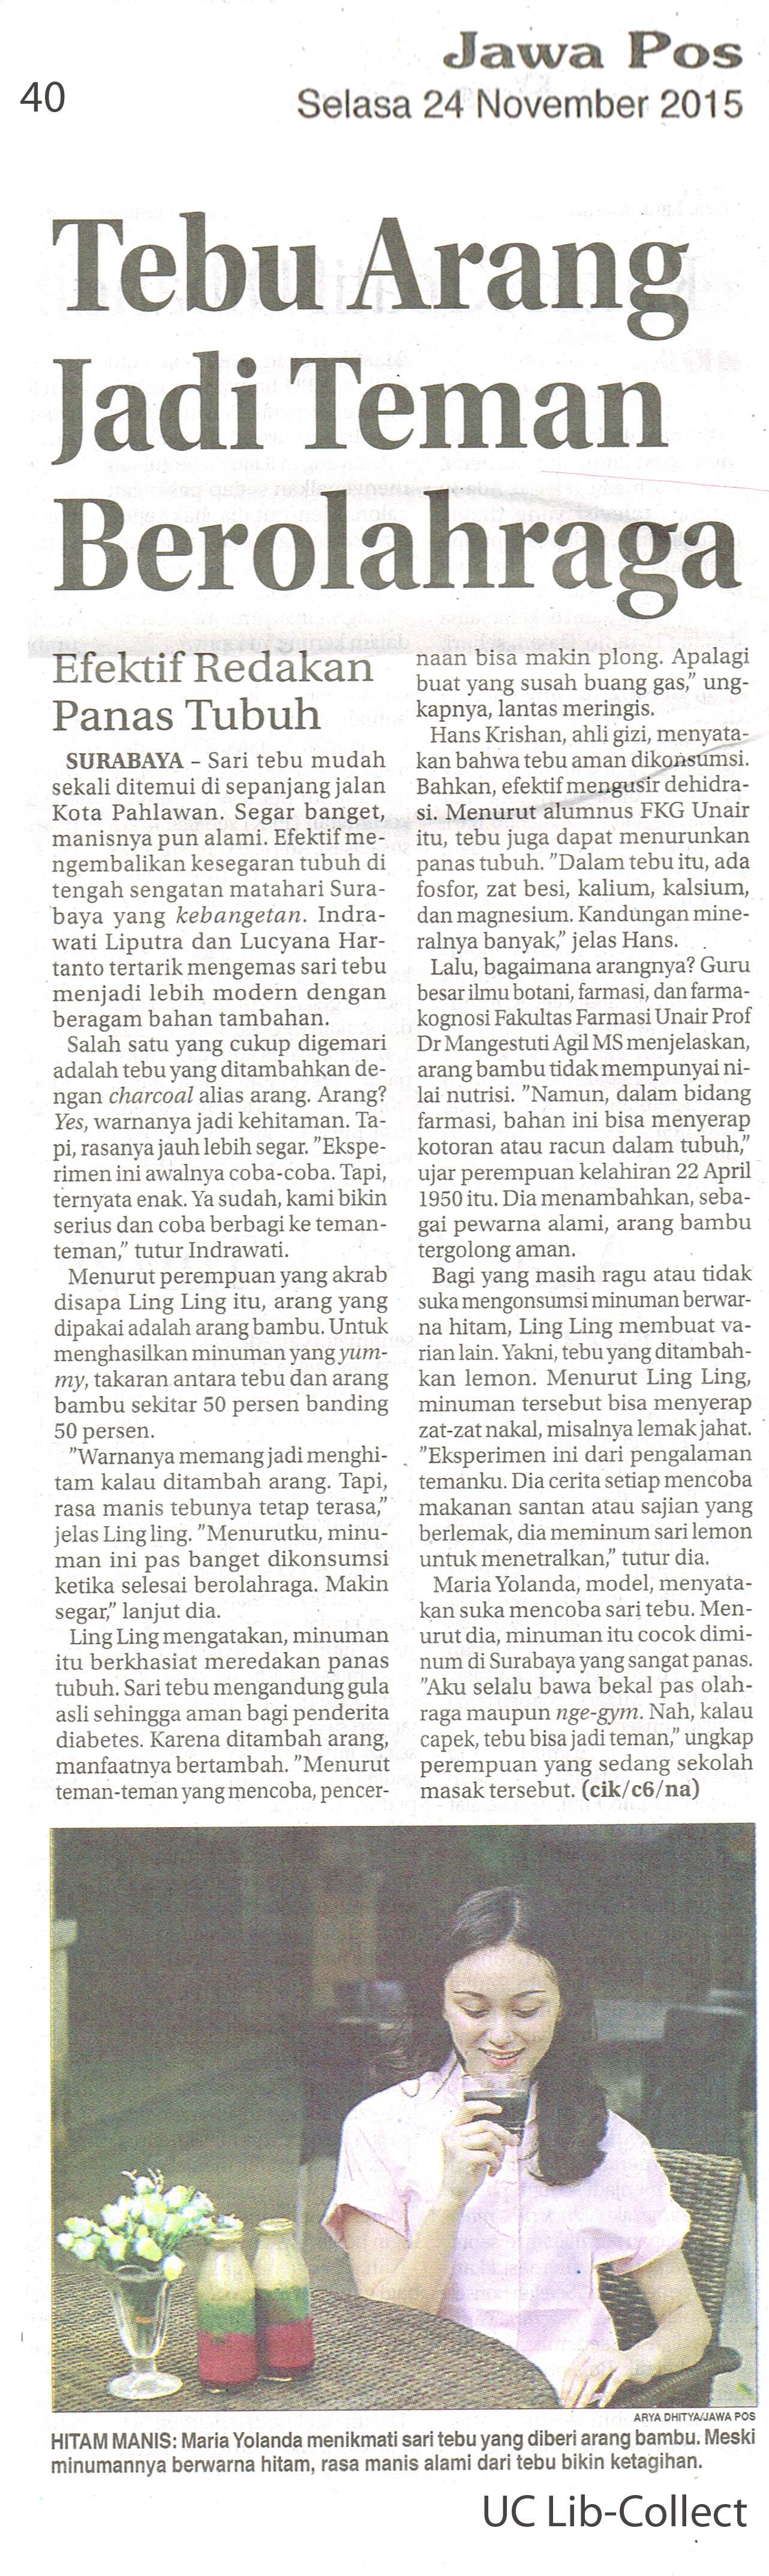 Tebu Arang Jadi Teman Berolahraga Jawa Pos 24 November 2015 Hal 40